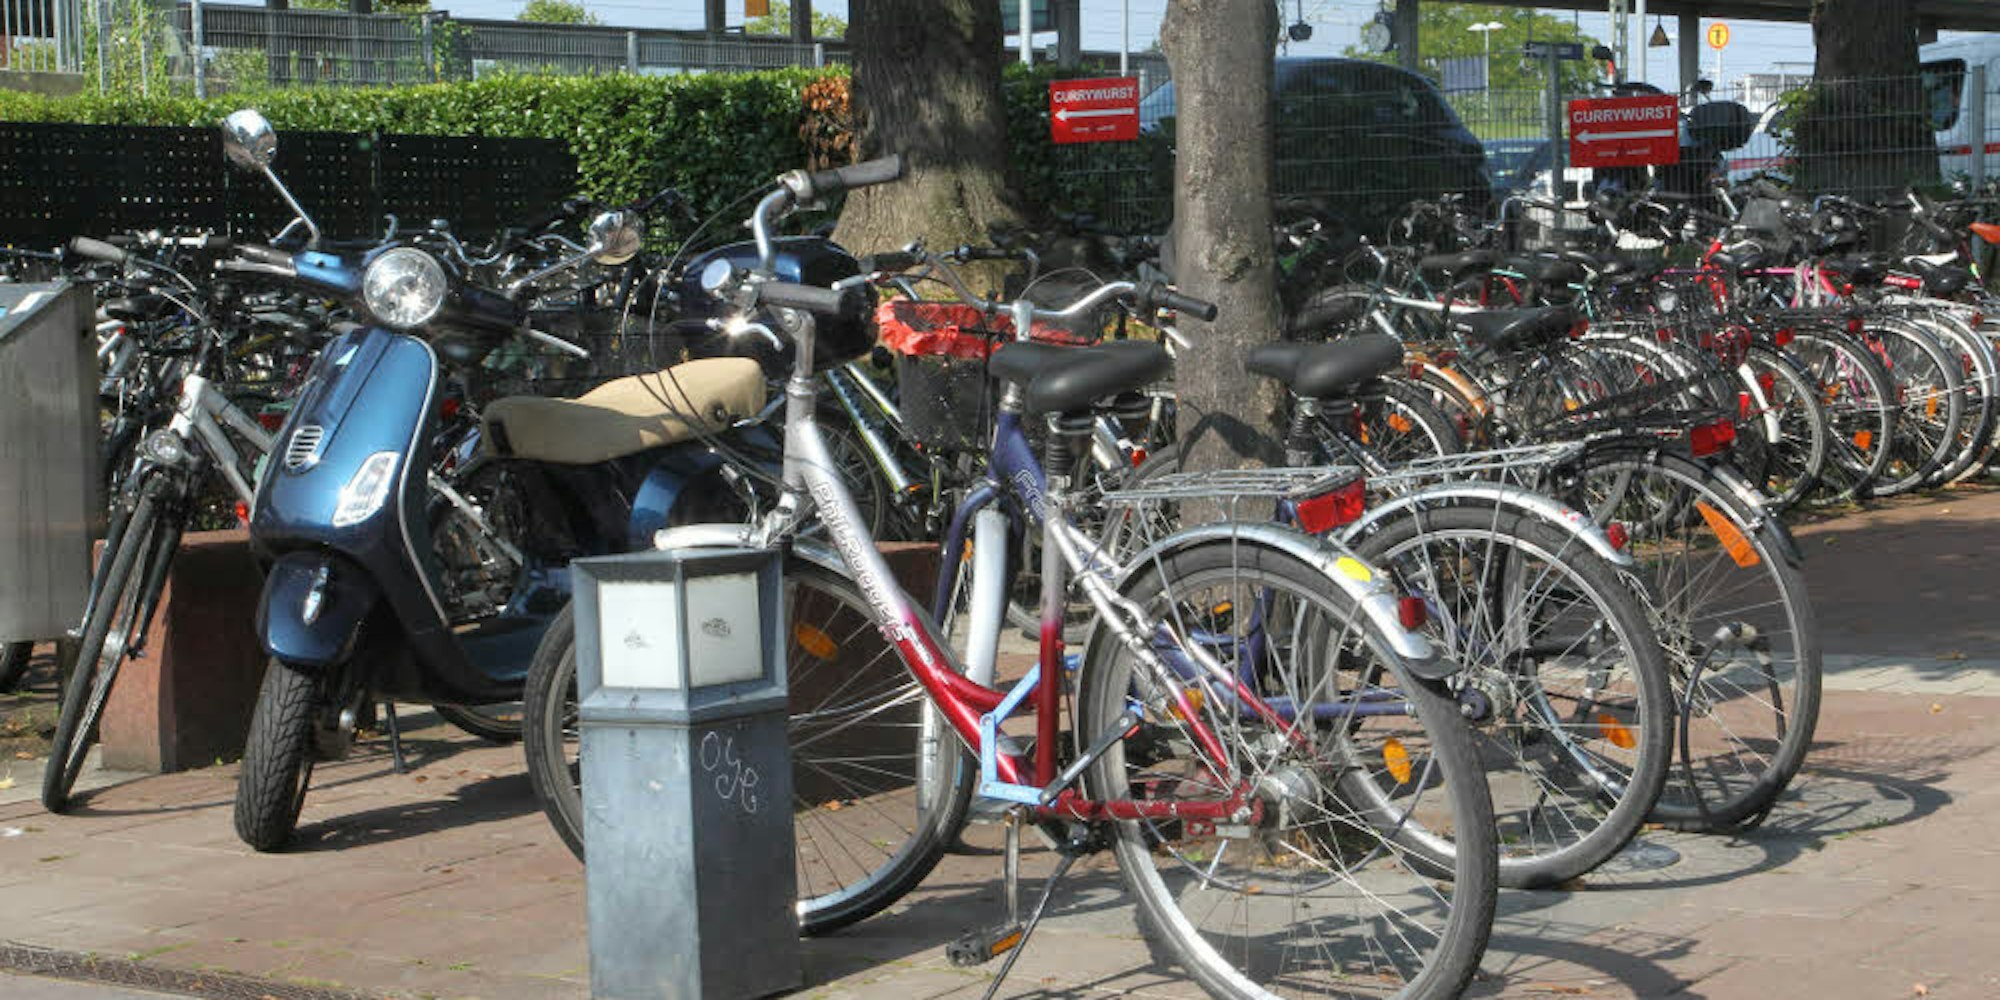 Der Abstellplatz für Zweiräder am Europlatz vor dem Bahnhof ist meistens überfüllt. In der Nähe gibt es auch die Fahrrad-Tiefgarage am Mühlengraben unter dem Hotel Herting. 400 weitere Plätze sollen im Stadtgebeit entstehen.